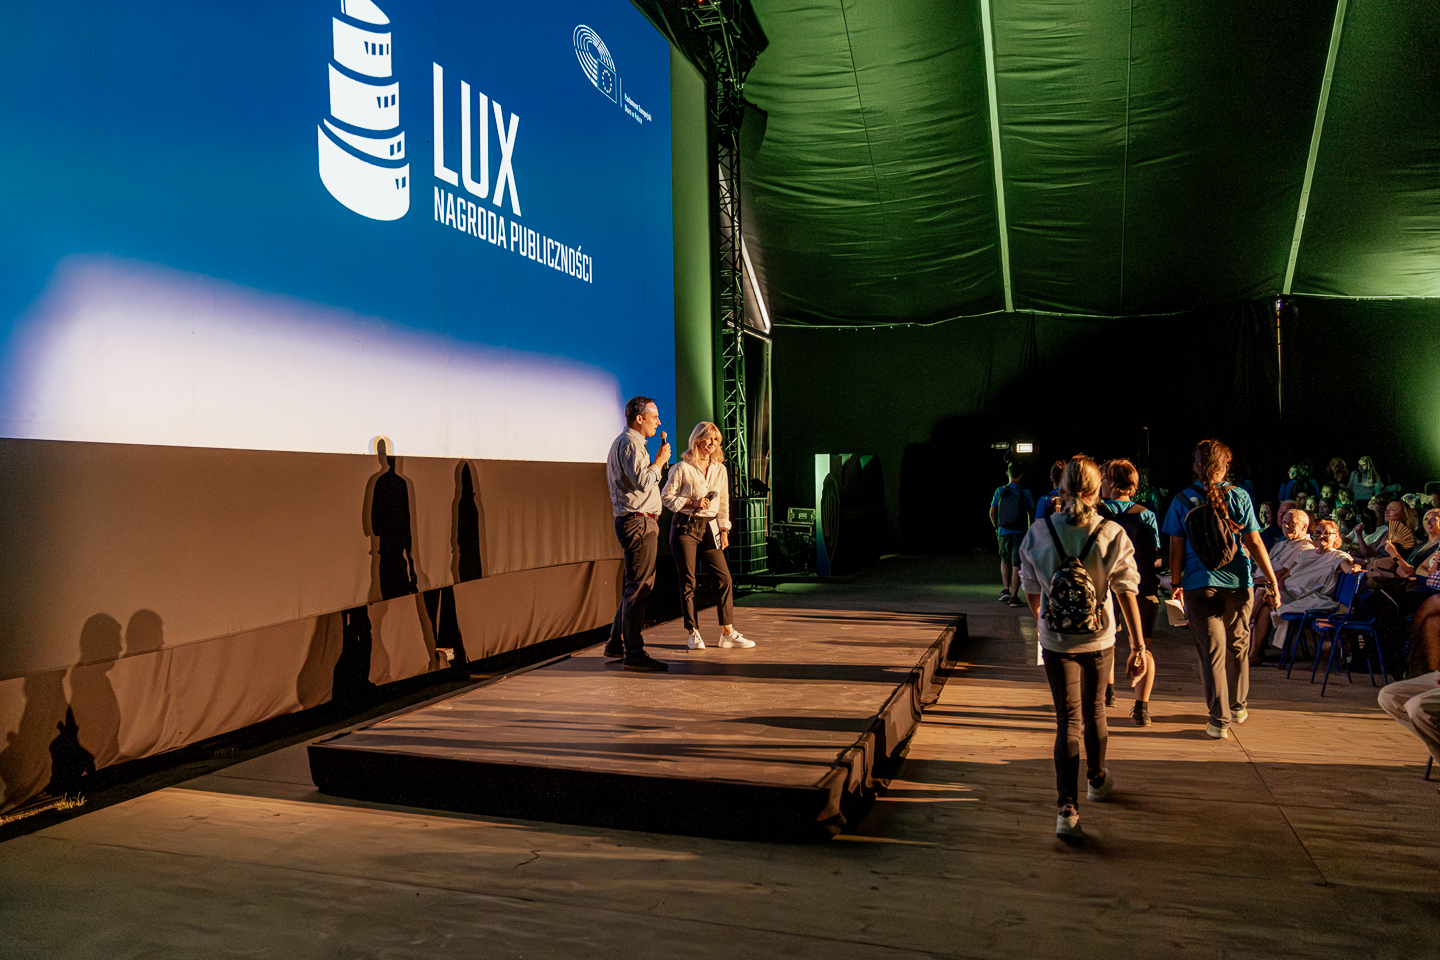 Zapowiedź — Lux Audience Award — Foto © Magda Boruch